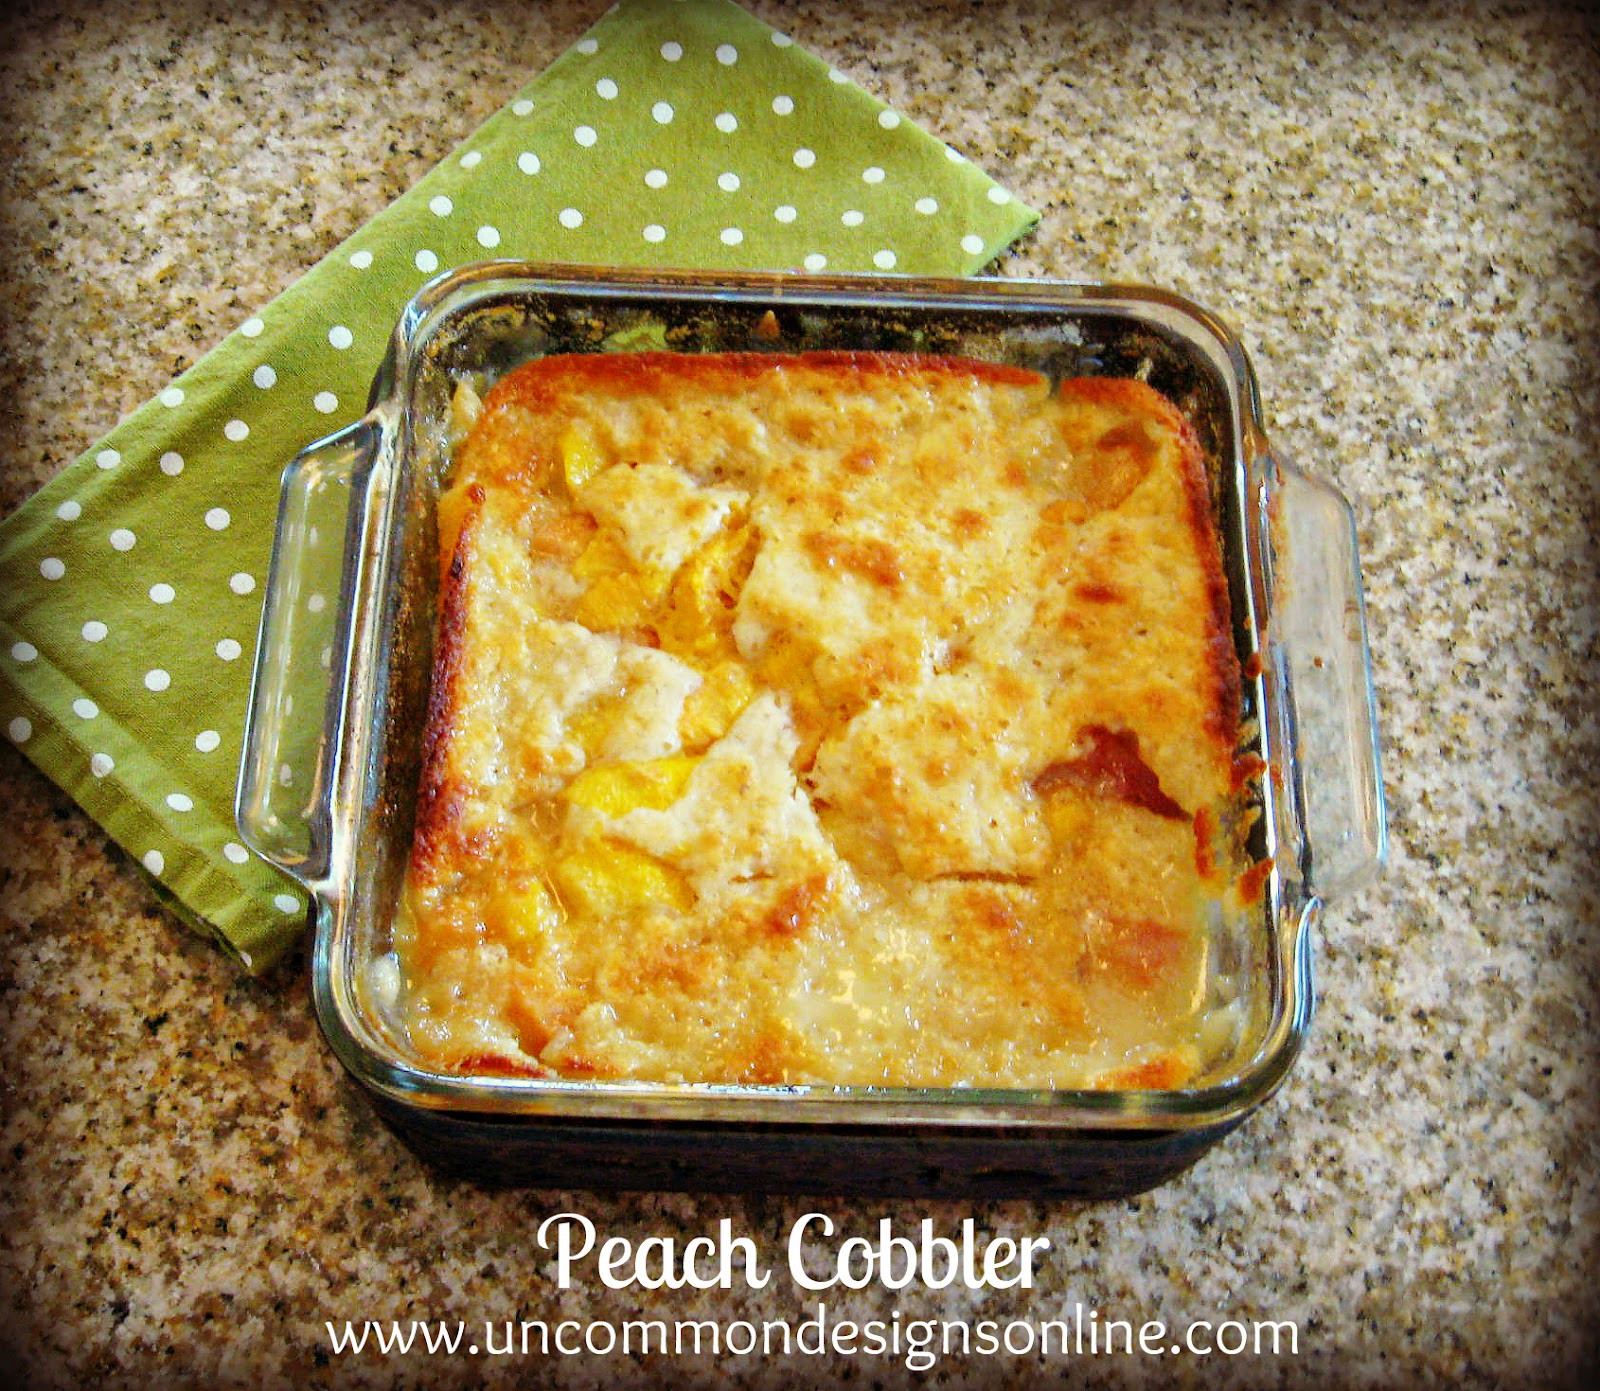 Peach Cobbler Pie Recipe
 The Best and Easiest Peach Cobbler Recipe Ever